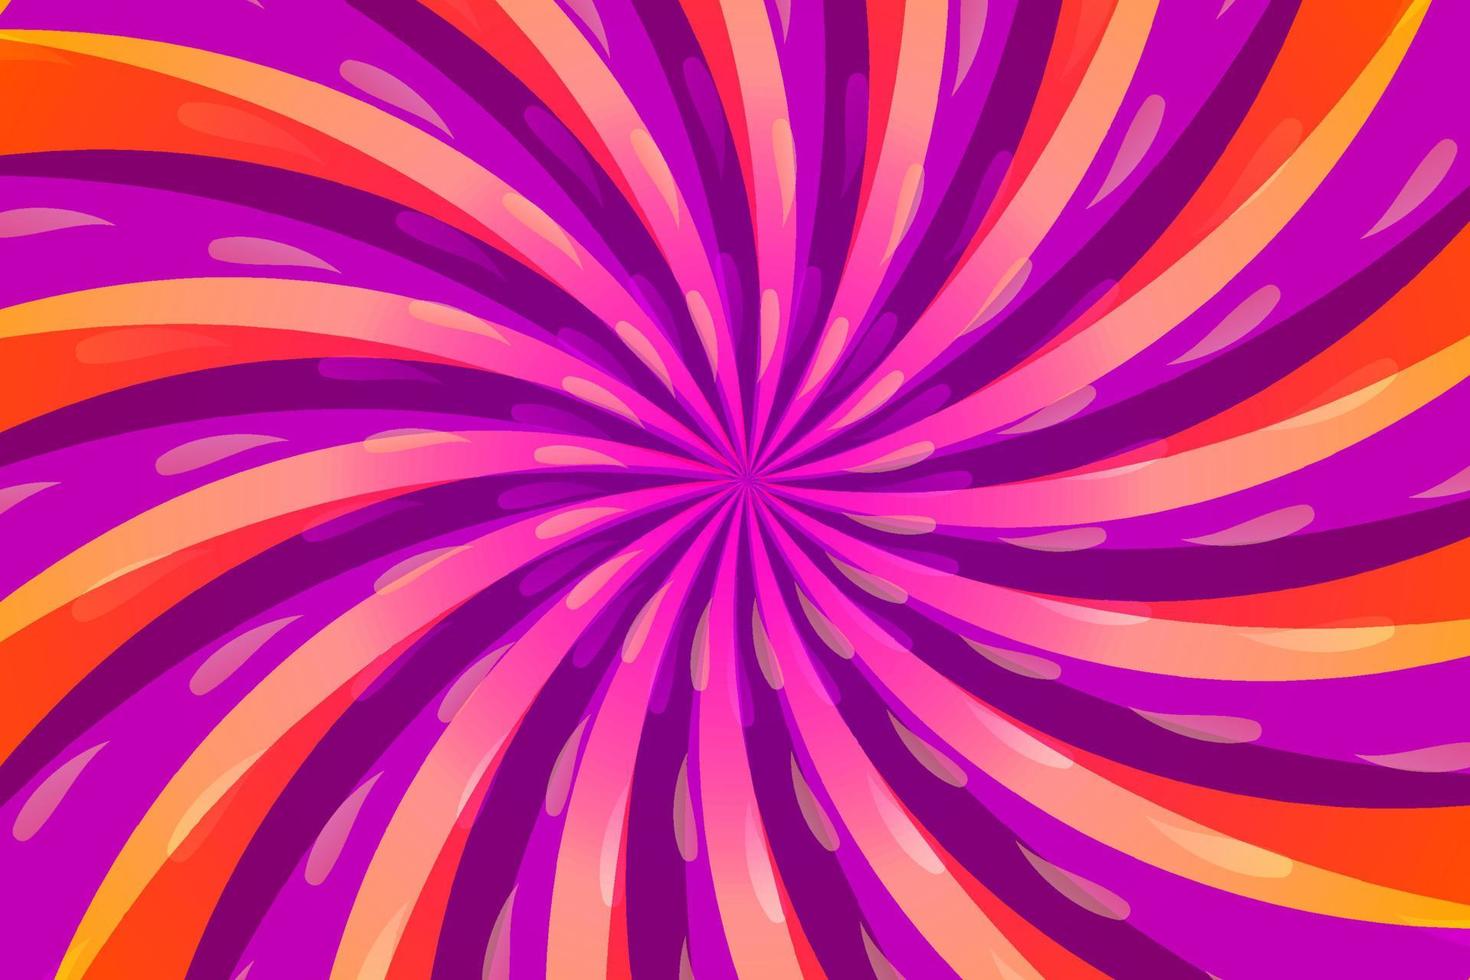 motivo a vortice vettoriale rosa e viola. sfondo radiale vorticoso, rotazione astratta dell'elica. motivo di sfondo vortice a spirale vortice starburst, raggi rotanti.